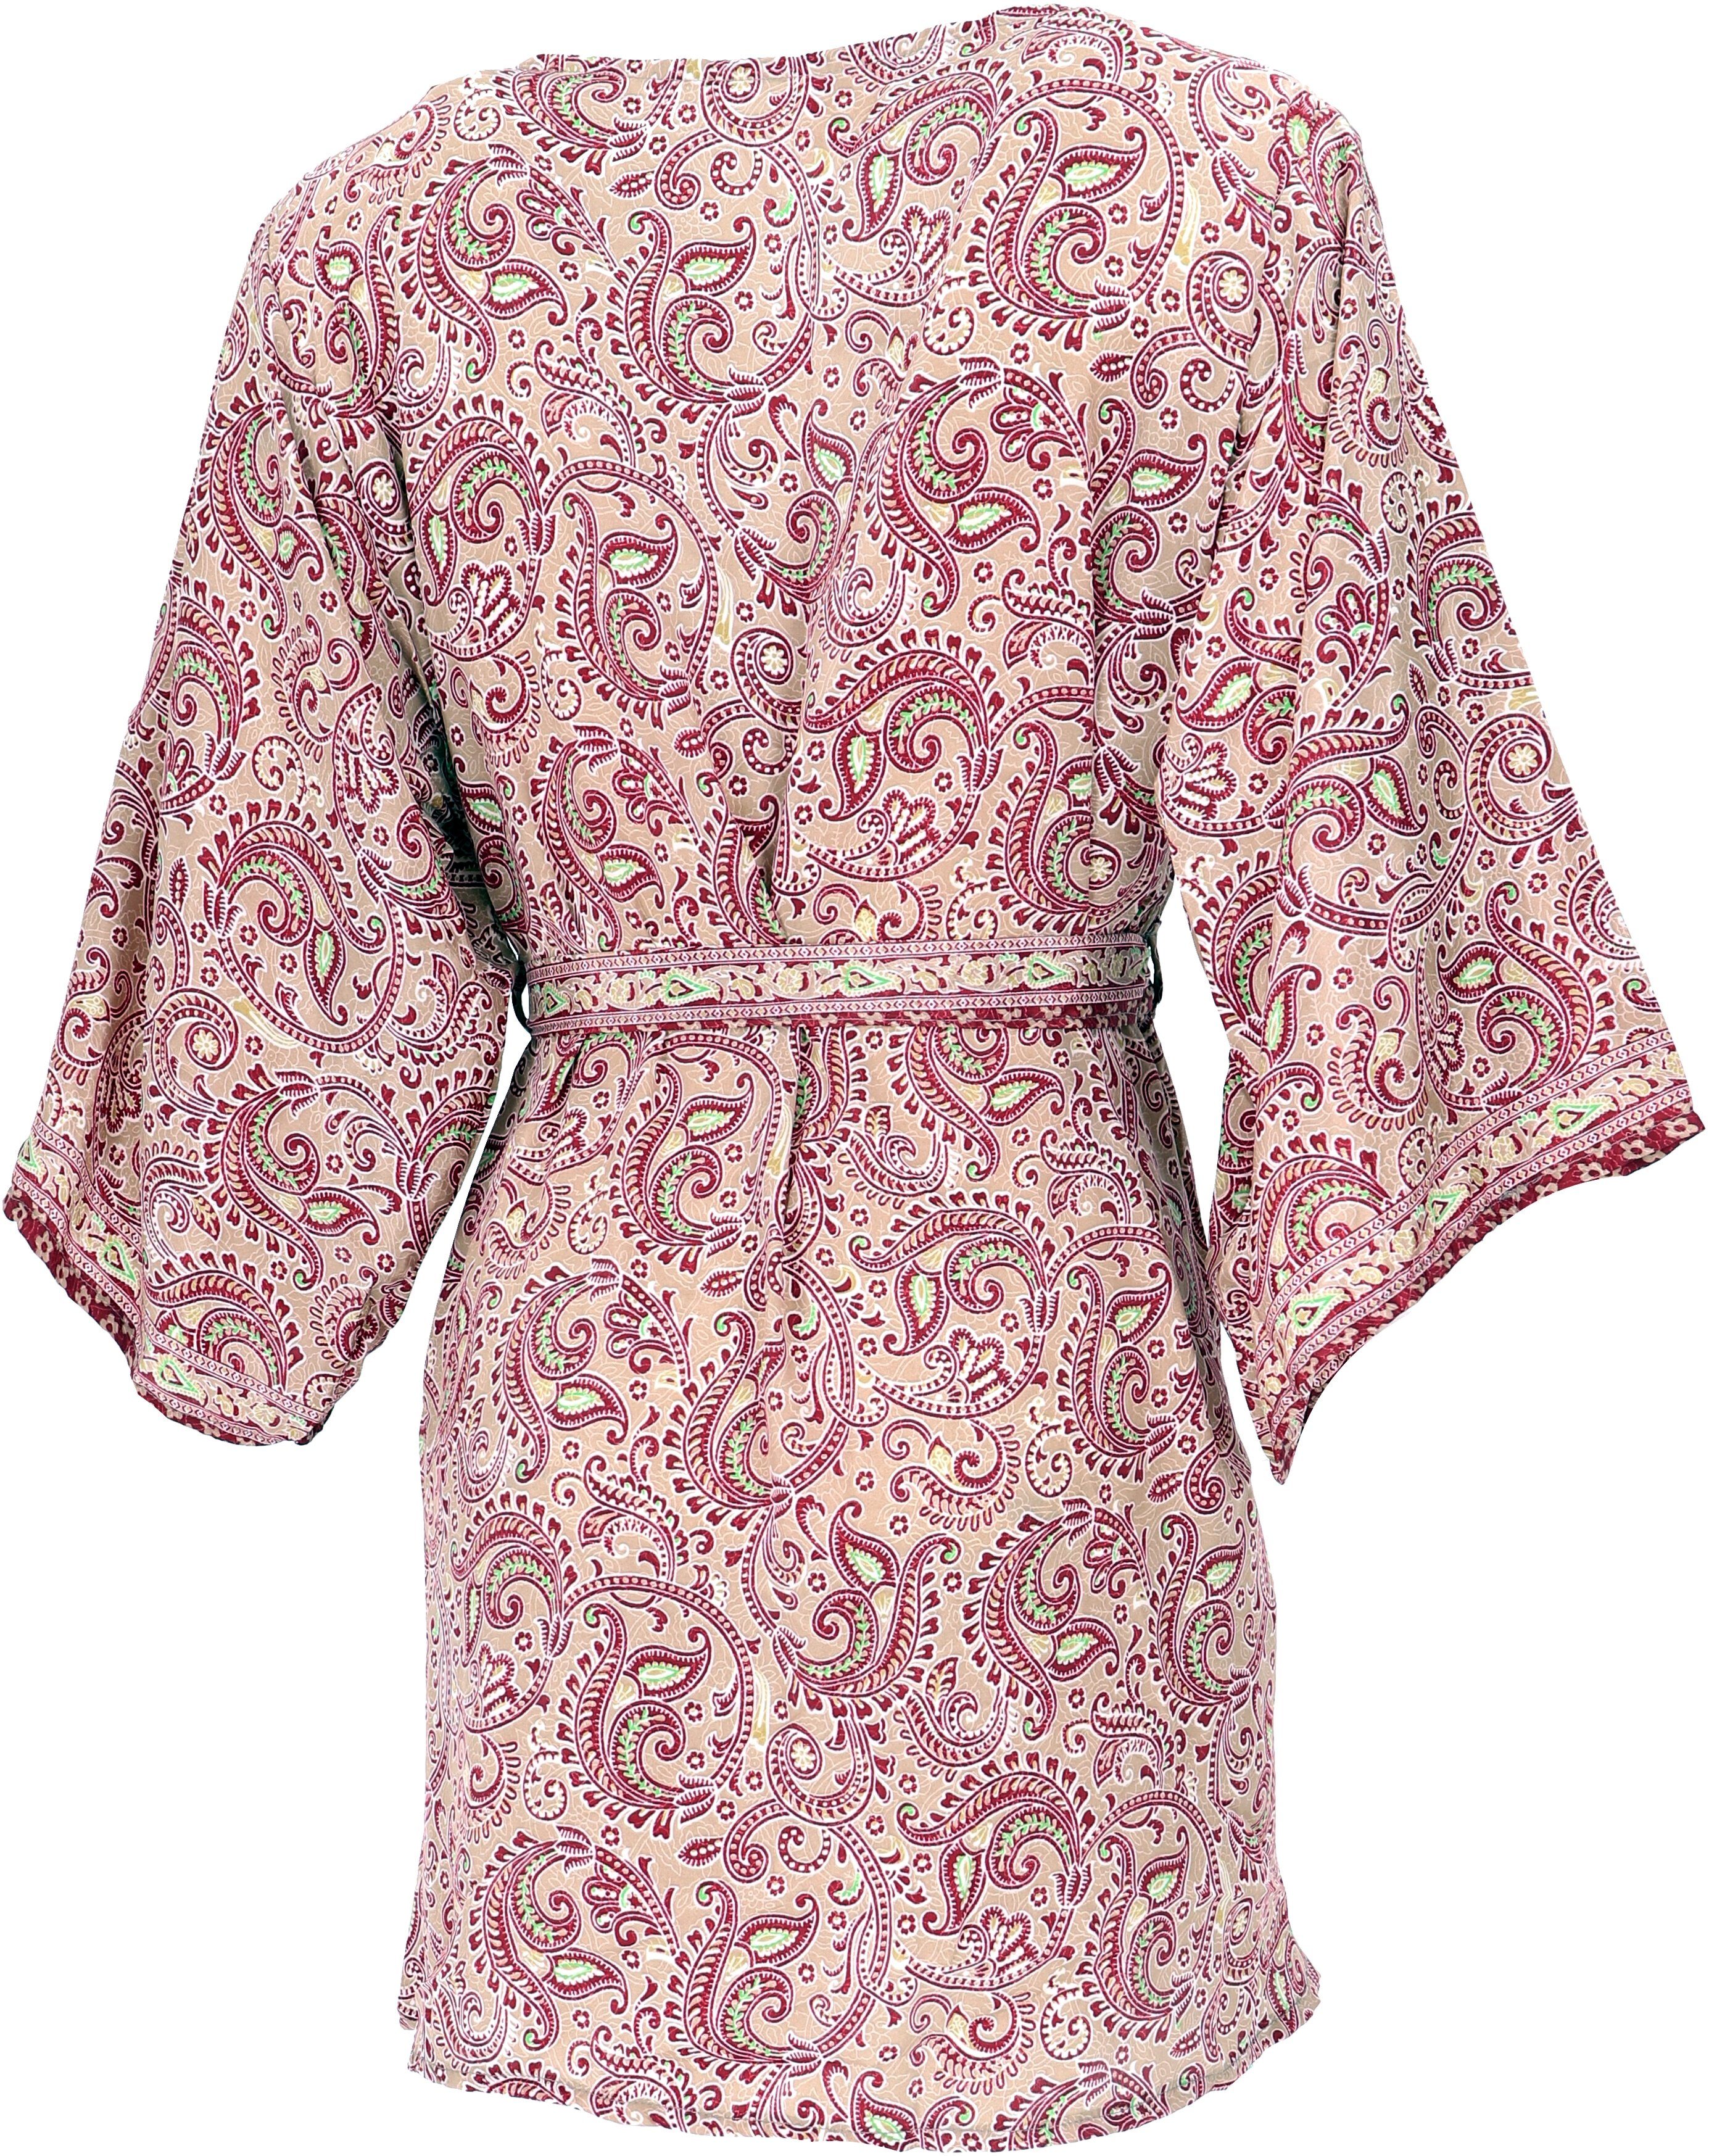 Guru-Shop Kimono Kimonokleid.., Kimonojäckchen, Kimono, Boho alternative kurzer beige/bordeaux Bekleidung